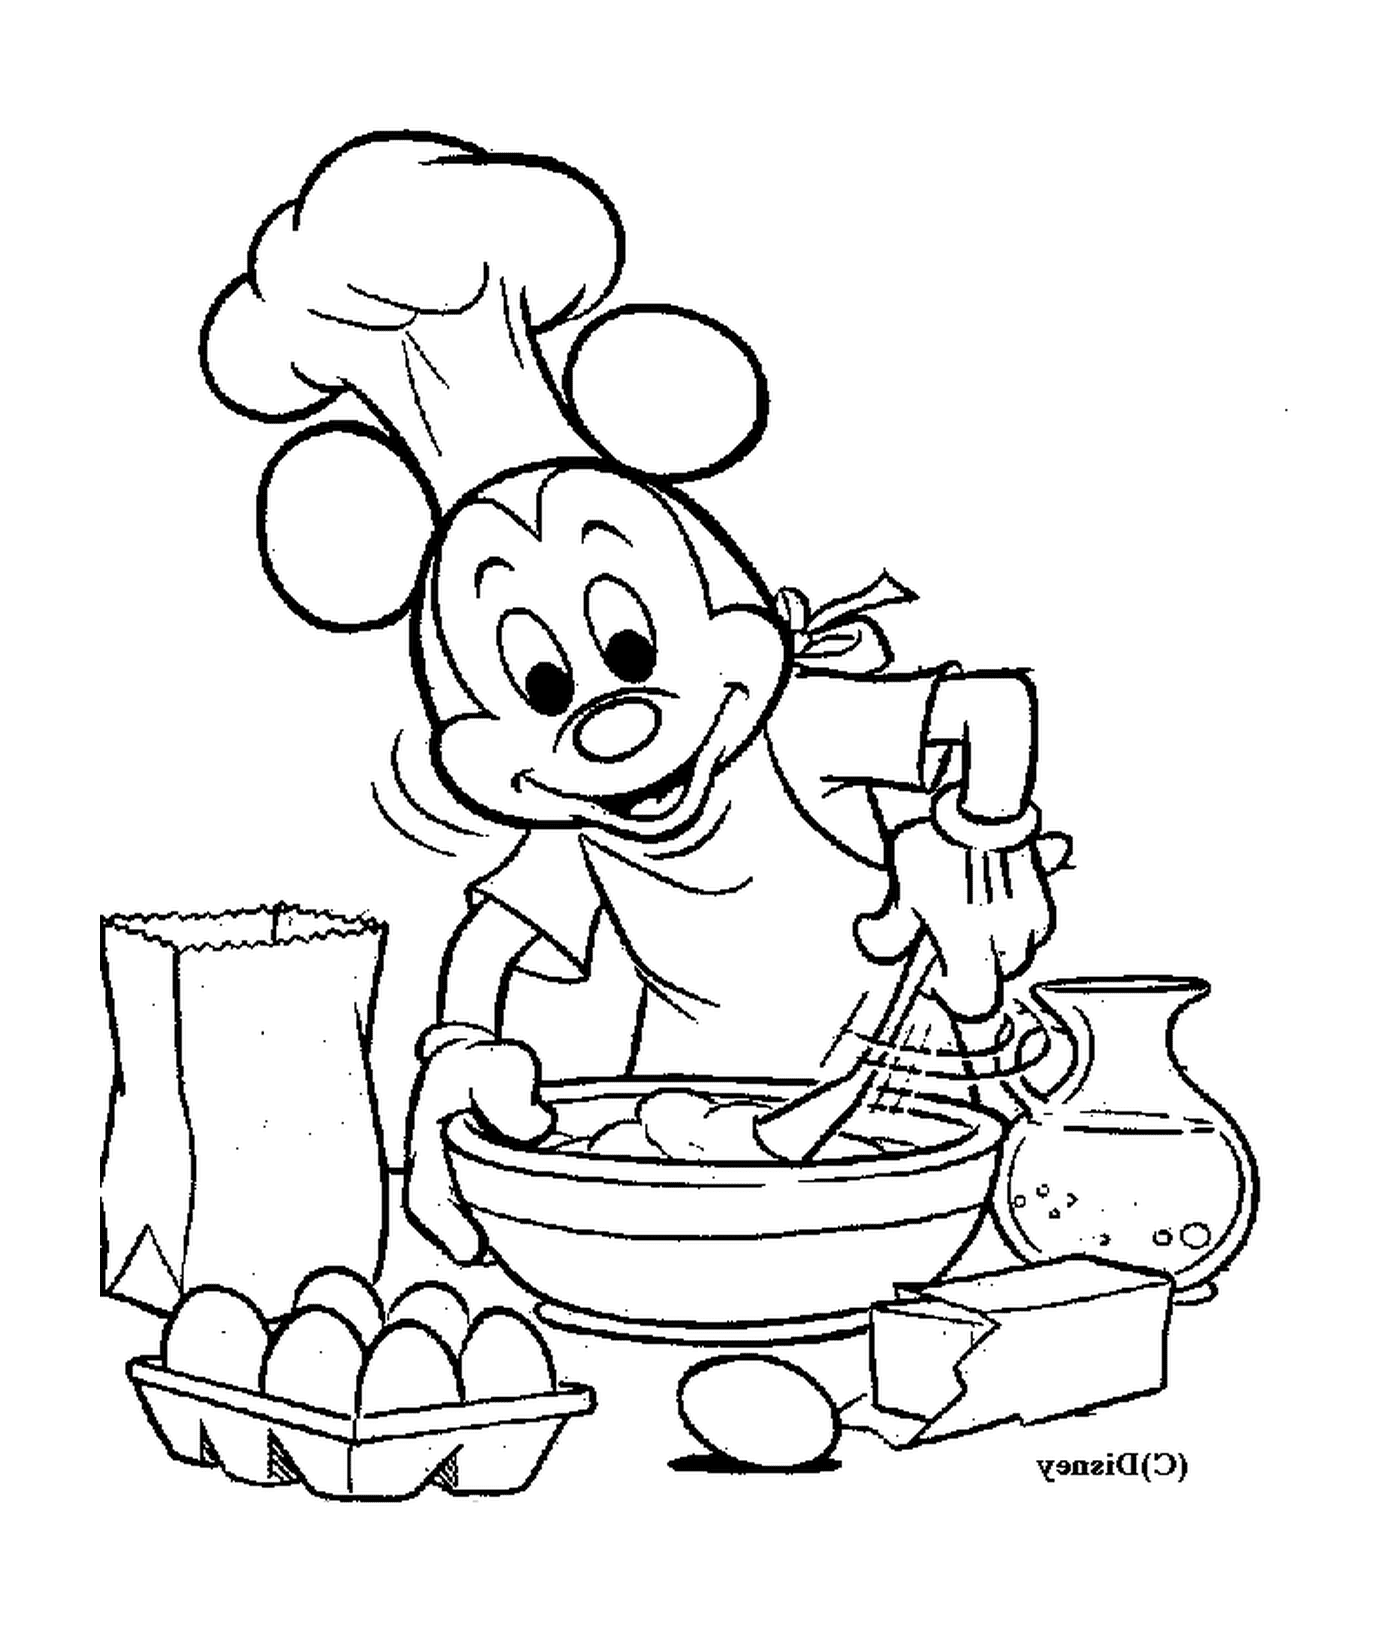  cozinha: chef Mickey Mouse misturando ovos 